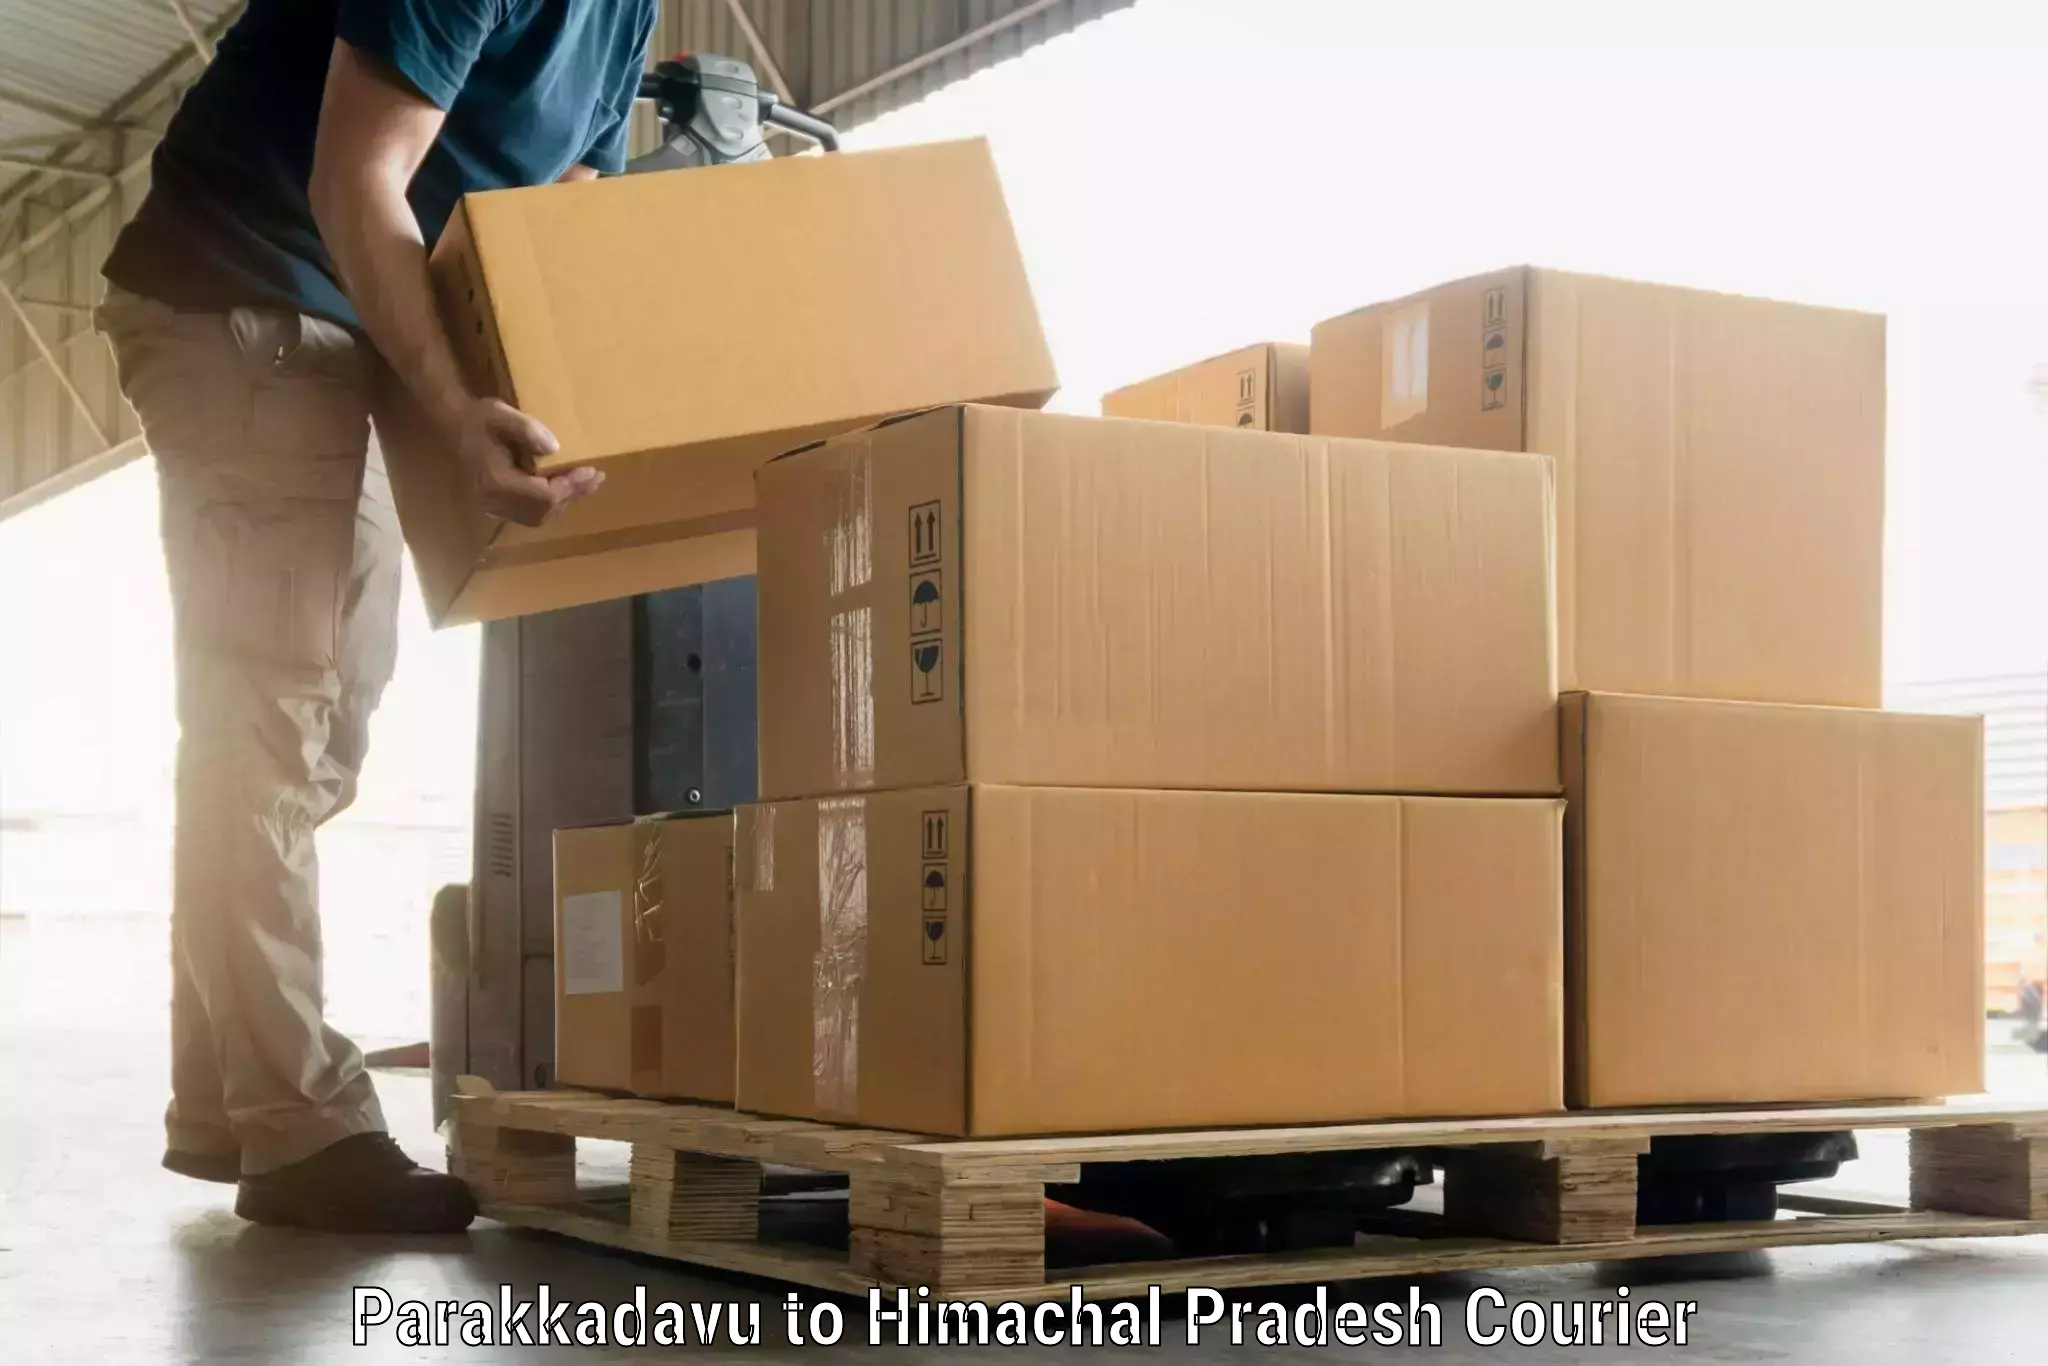 Luggage transport company Parakkadavu to Himachal Pradesh